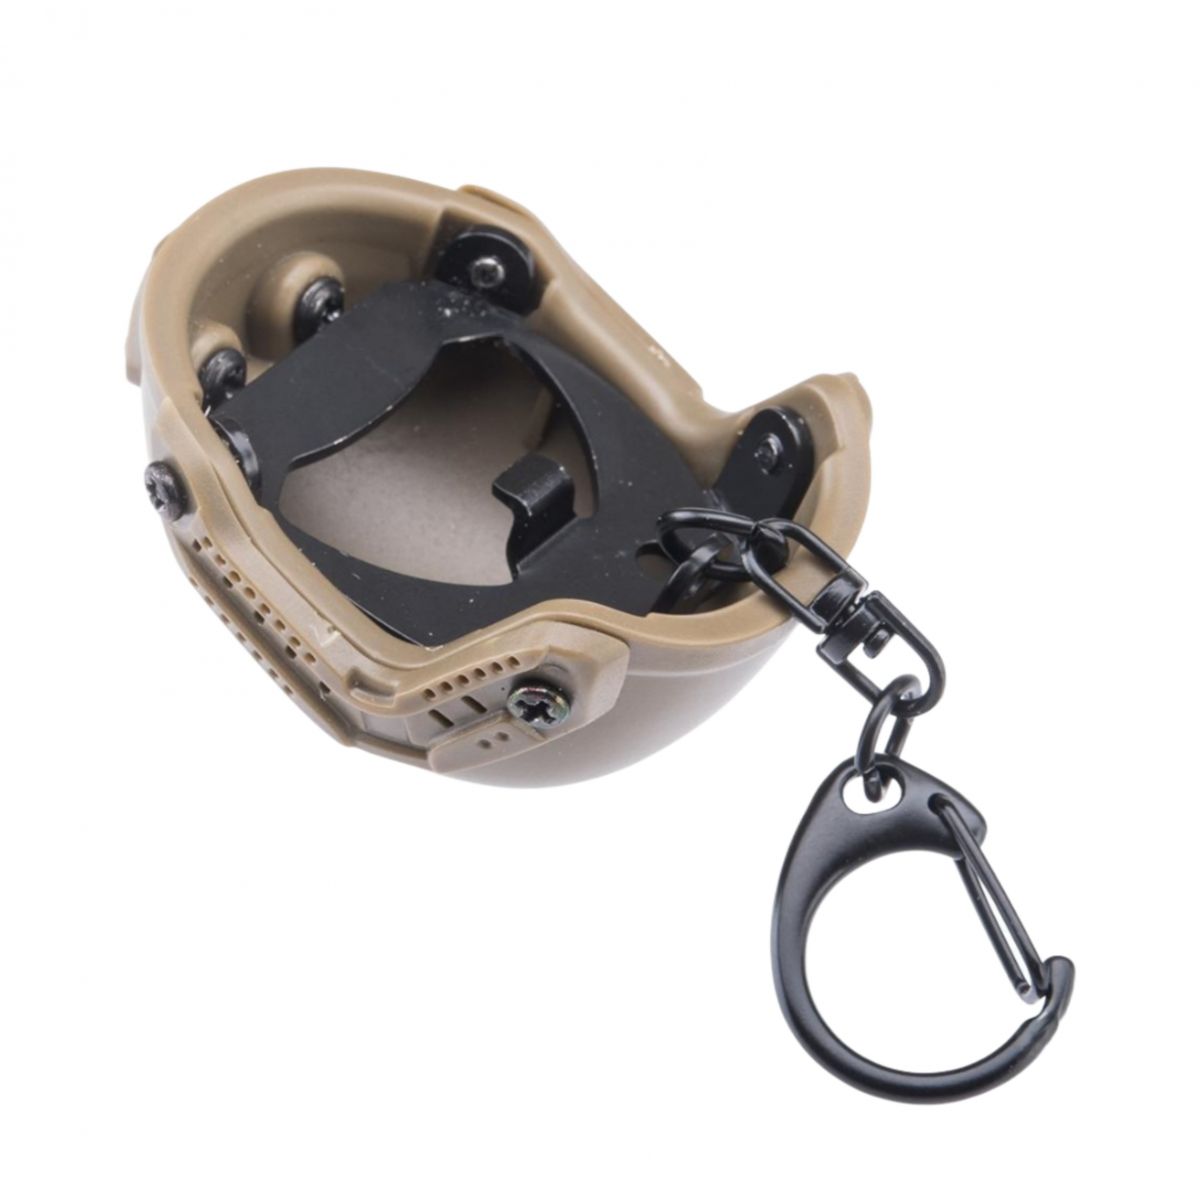 Брелок-открывалка в виде шлема TOR-D. Функциональный сувенир с карабином 2